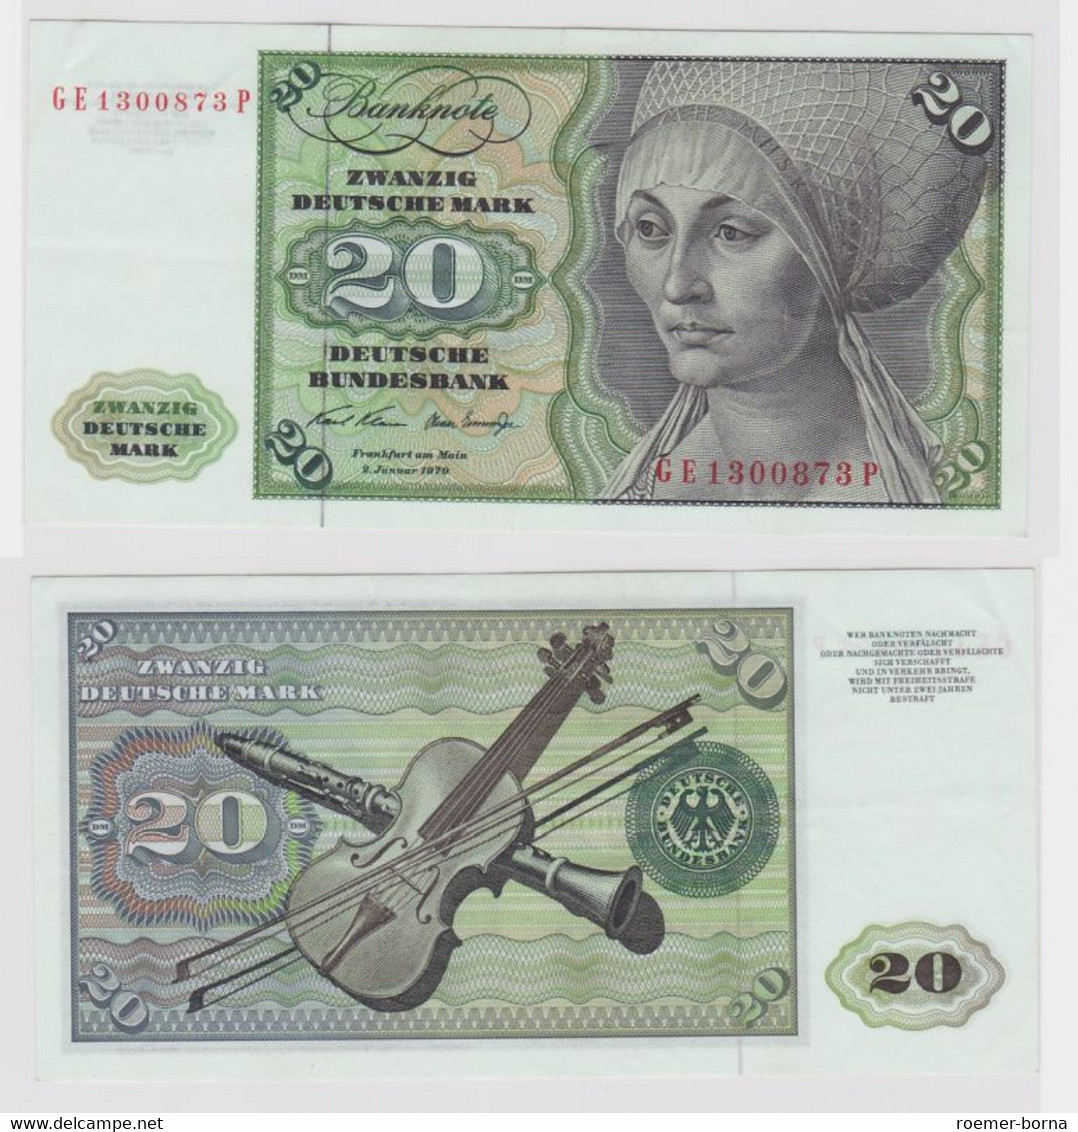 T148244 Banknote 20 DM Deutsche Mark Ro. 271b Schein 2.Jan. 1970 KN GE 1300873 P - 20 Deutsche Mark